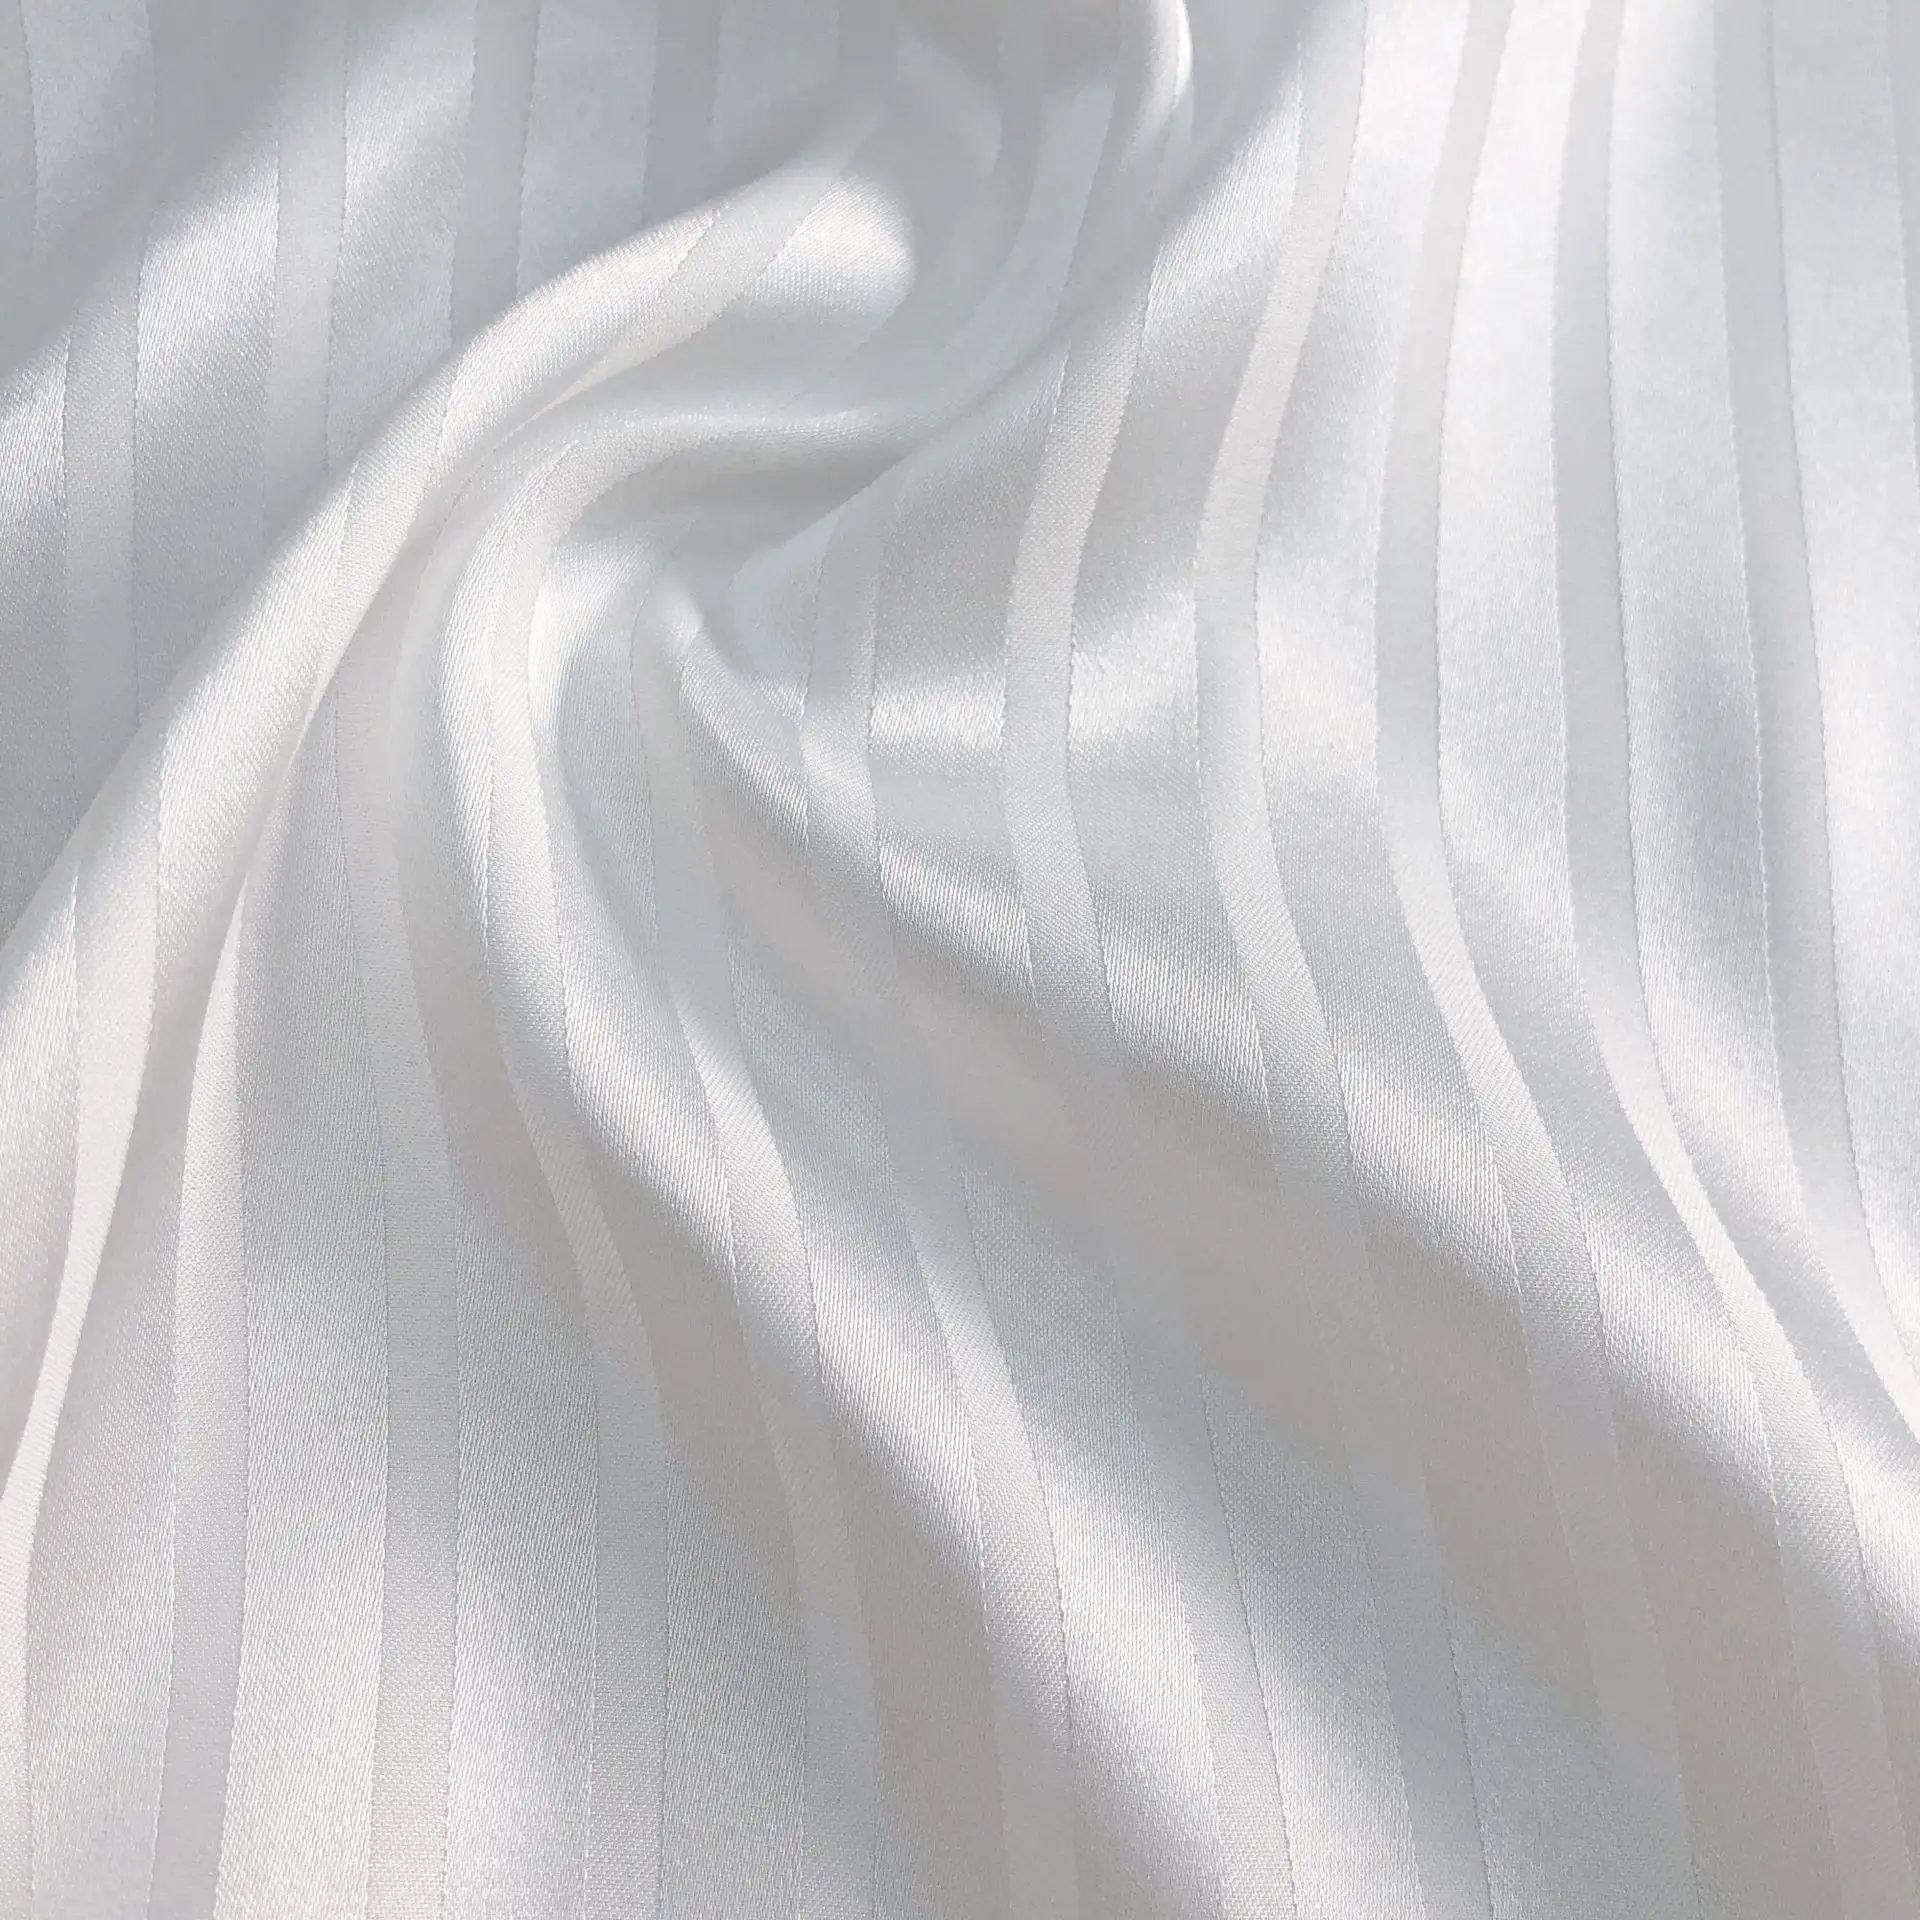 Vente en gros 150 GSM blanc uni, tissu à rayures en Satin, Polyester coton jackqauds 3CM Satin rayé blanc literie tissu/